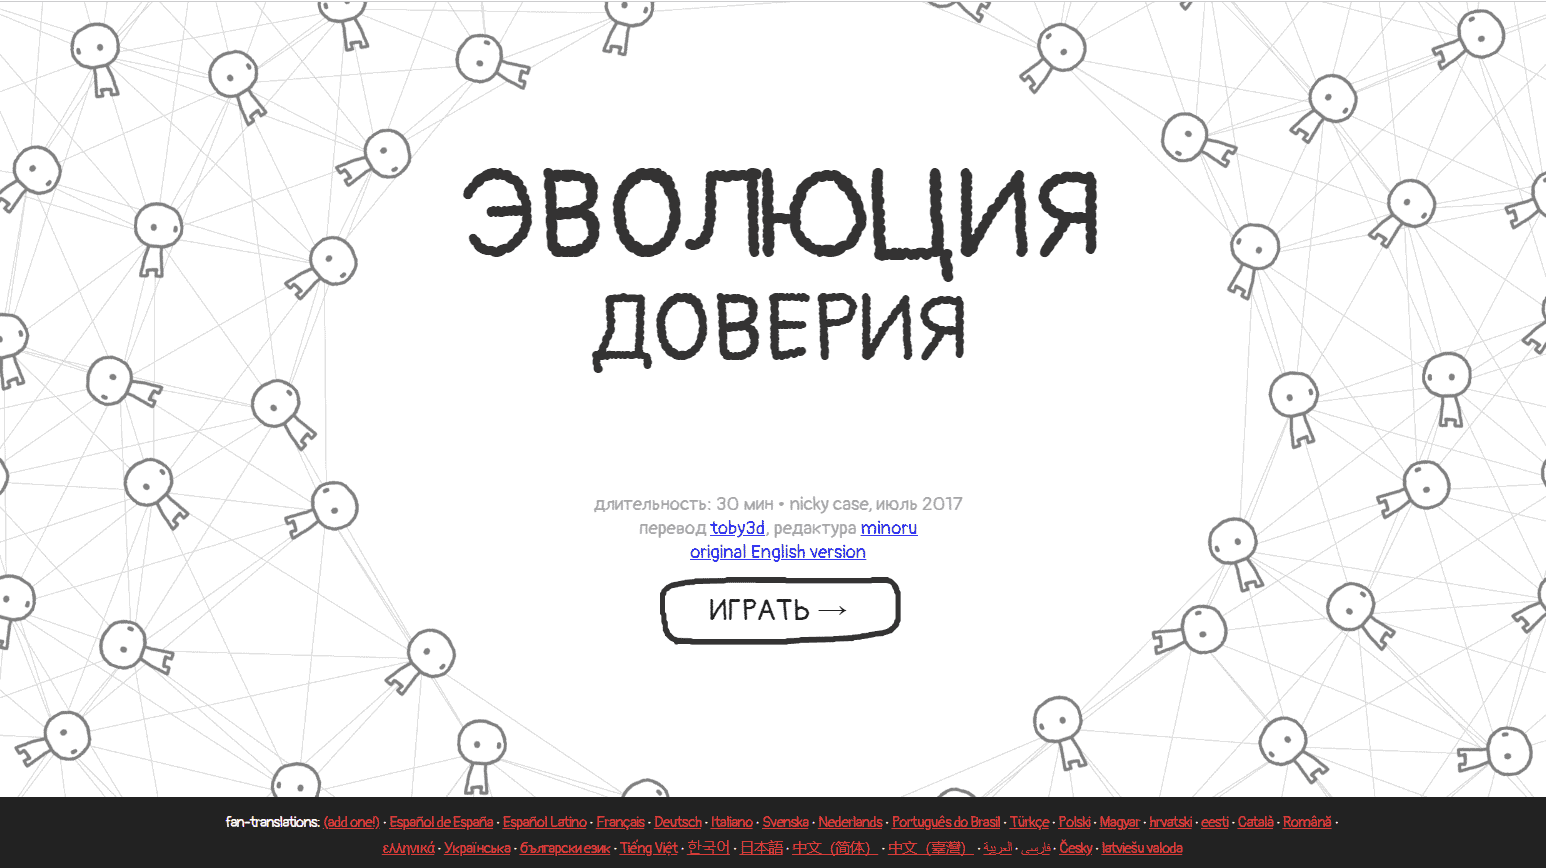 Скриншот игры, предложенной Android разработчиком, создателем паблика Lukos.Apps и ведущим собственного подкаста «Будет Хуже» — Константином Lukos’ом